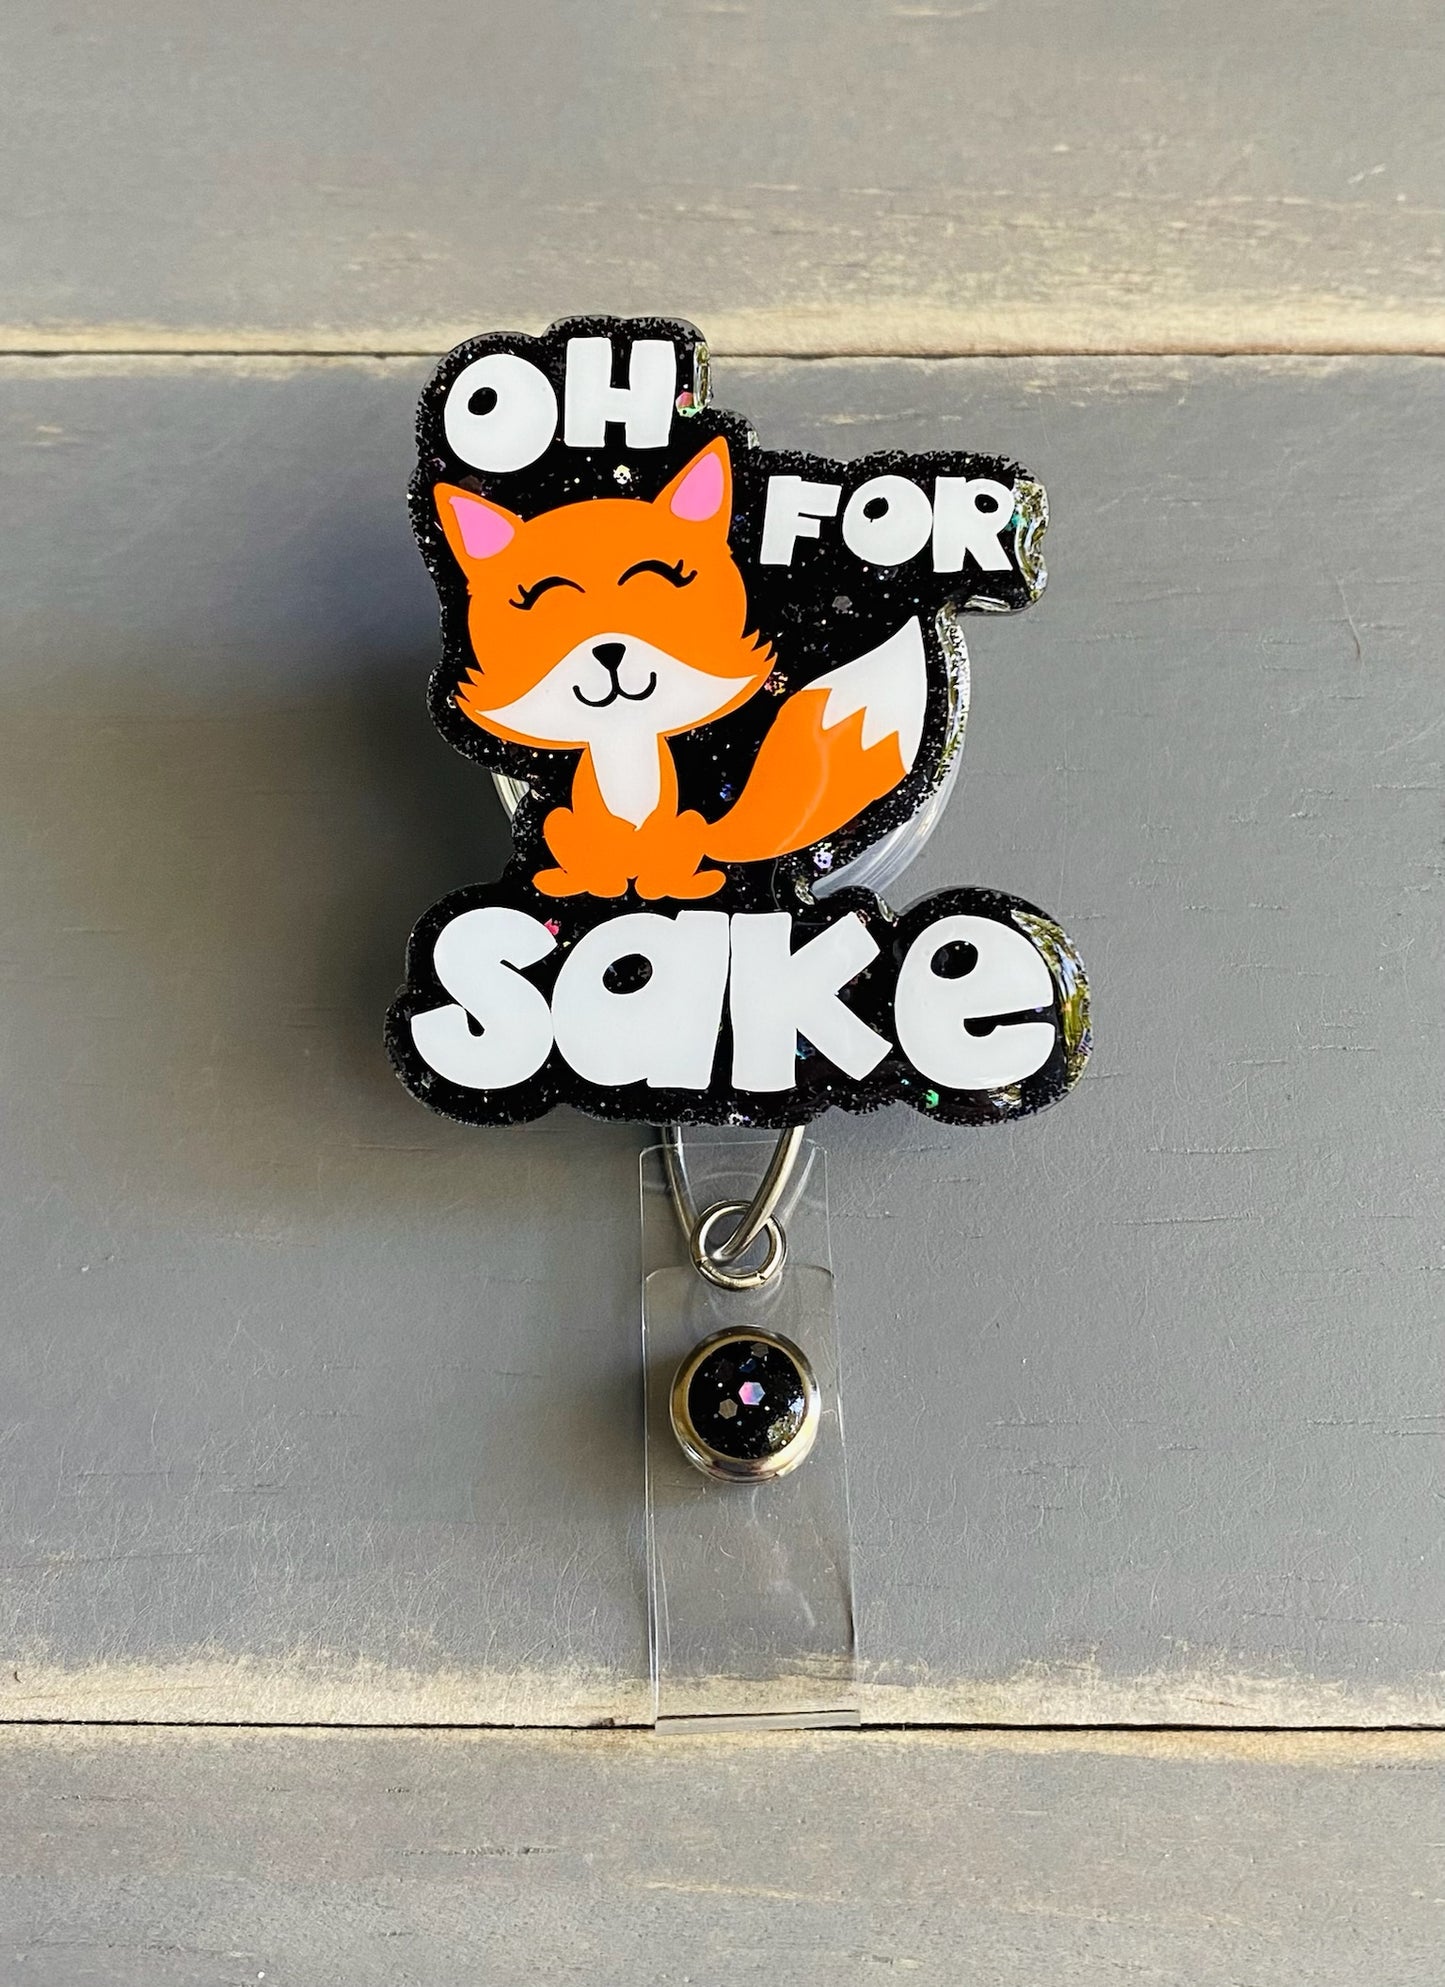 Oh for Fox Sake Badge Reel